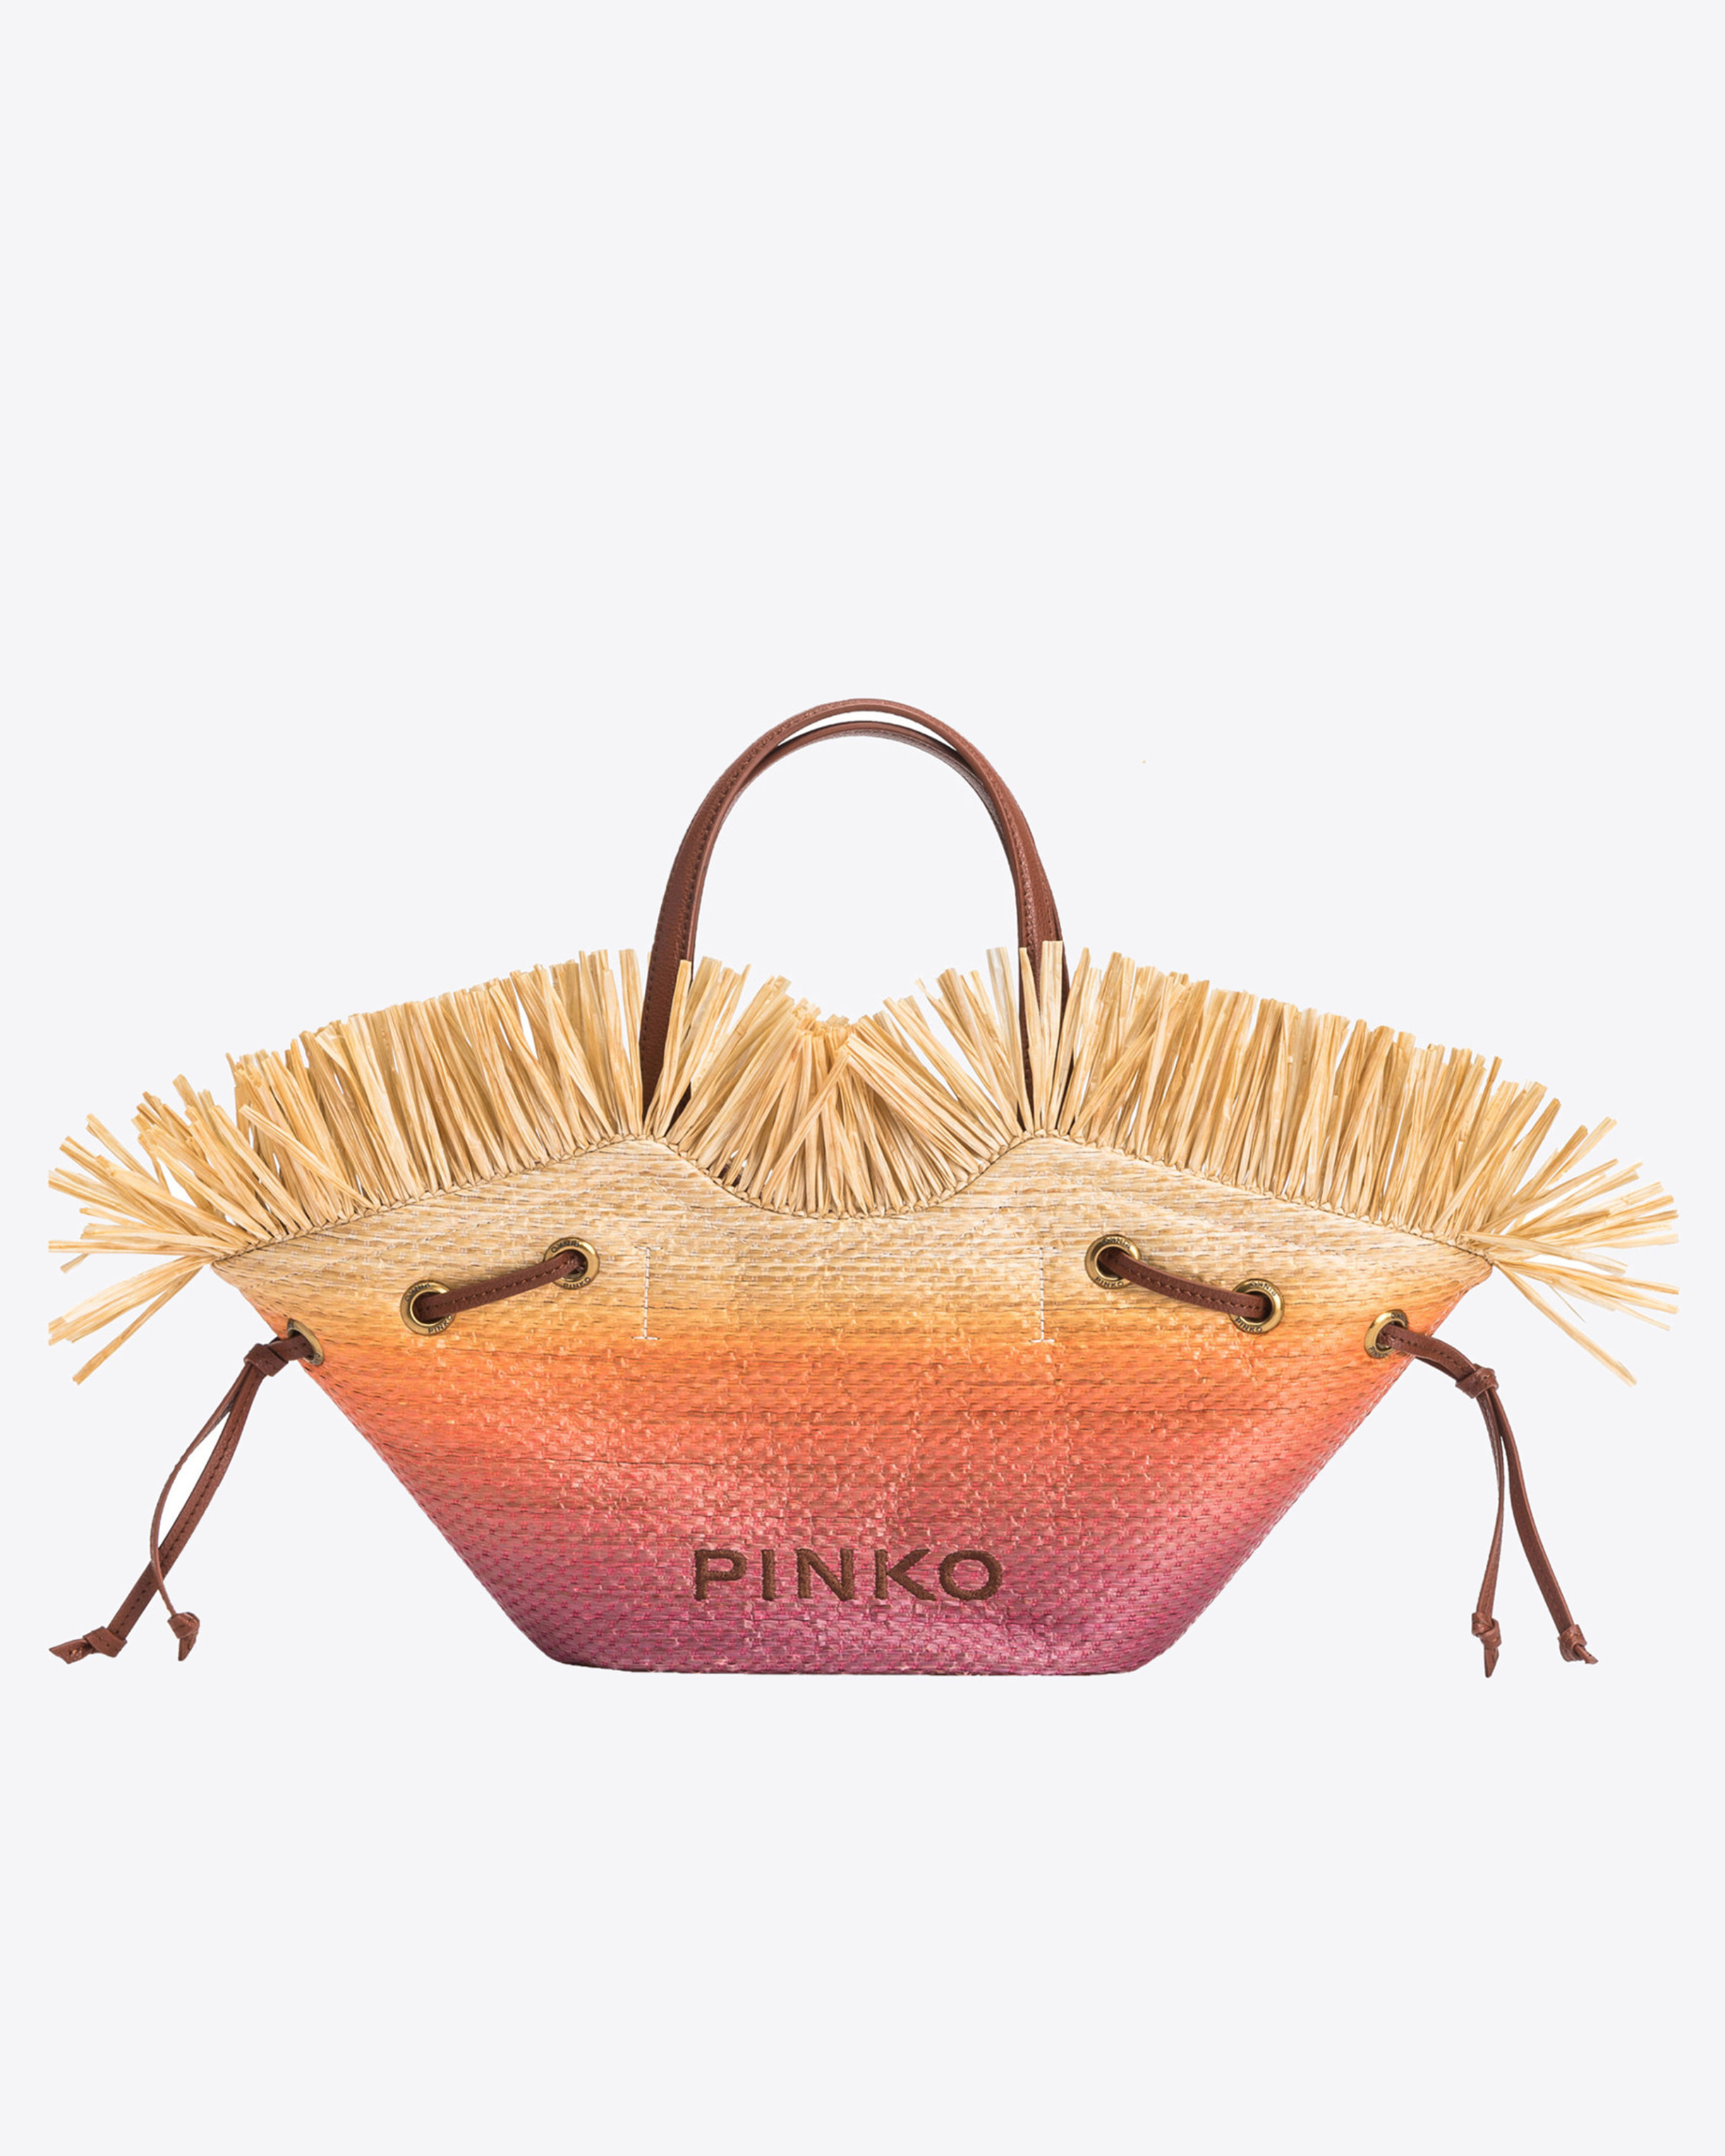 Pinko Small Pagoda Shopper Bag In Faded Raffia In Fuchsia/orange/natural